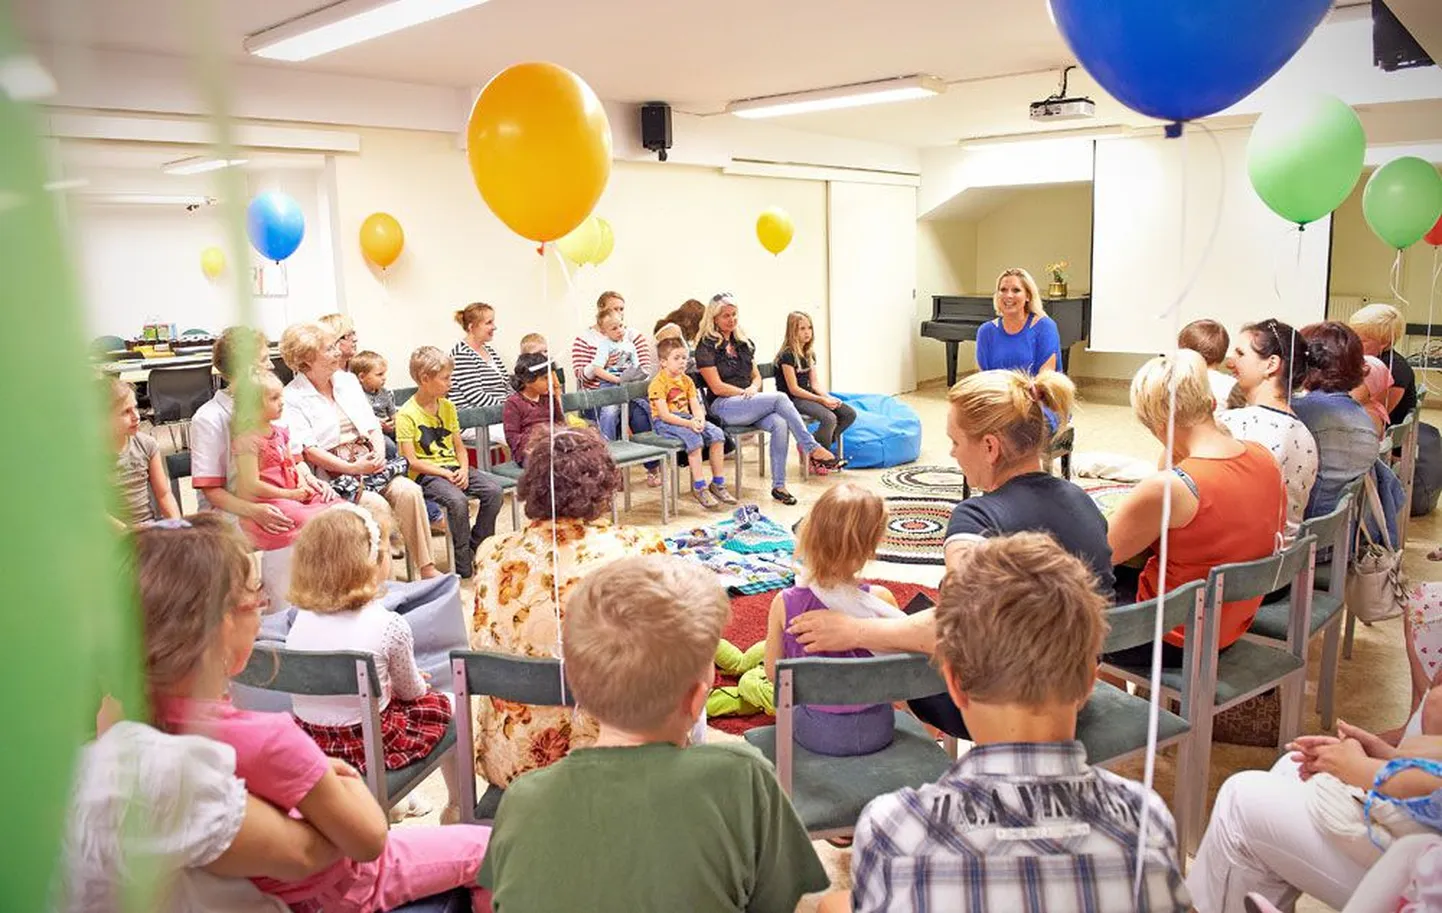 Оперная дива Аннели Пеэбо согласилась стать патронессой благотворительного фонда «День моей мечты» и встретилась вчера с малышами-пациентами Таллиннской детской больницы.